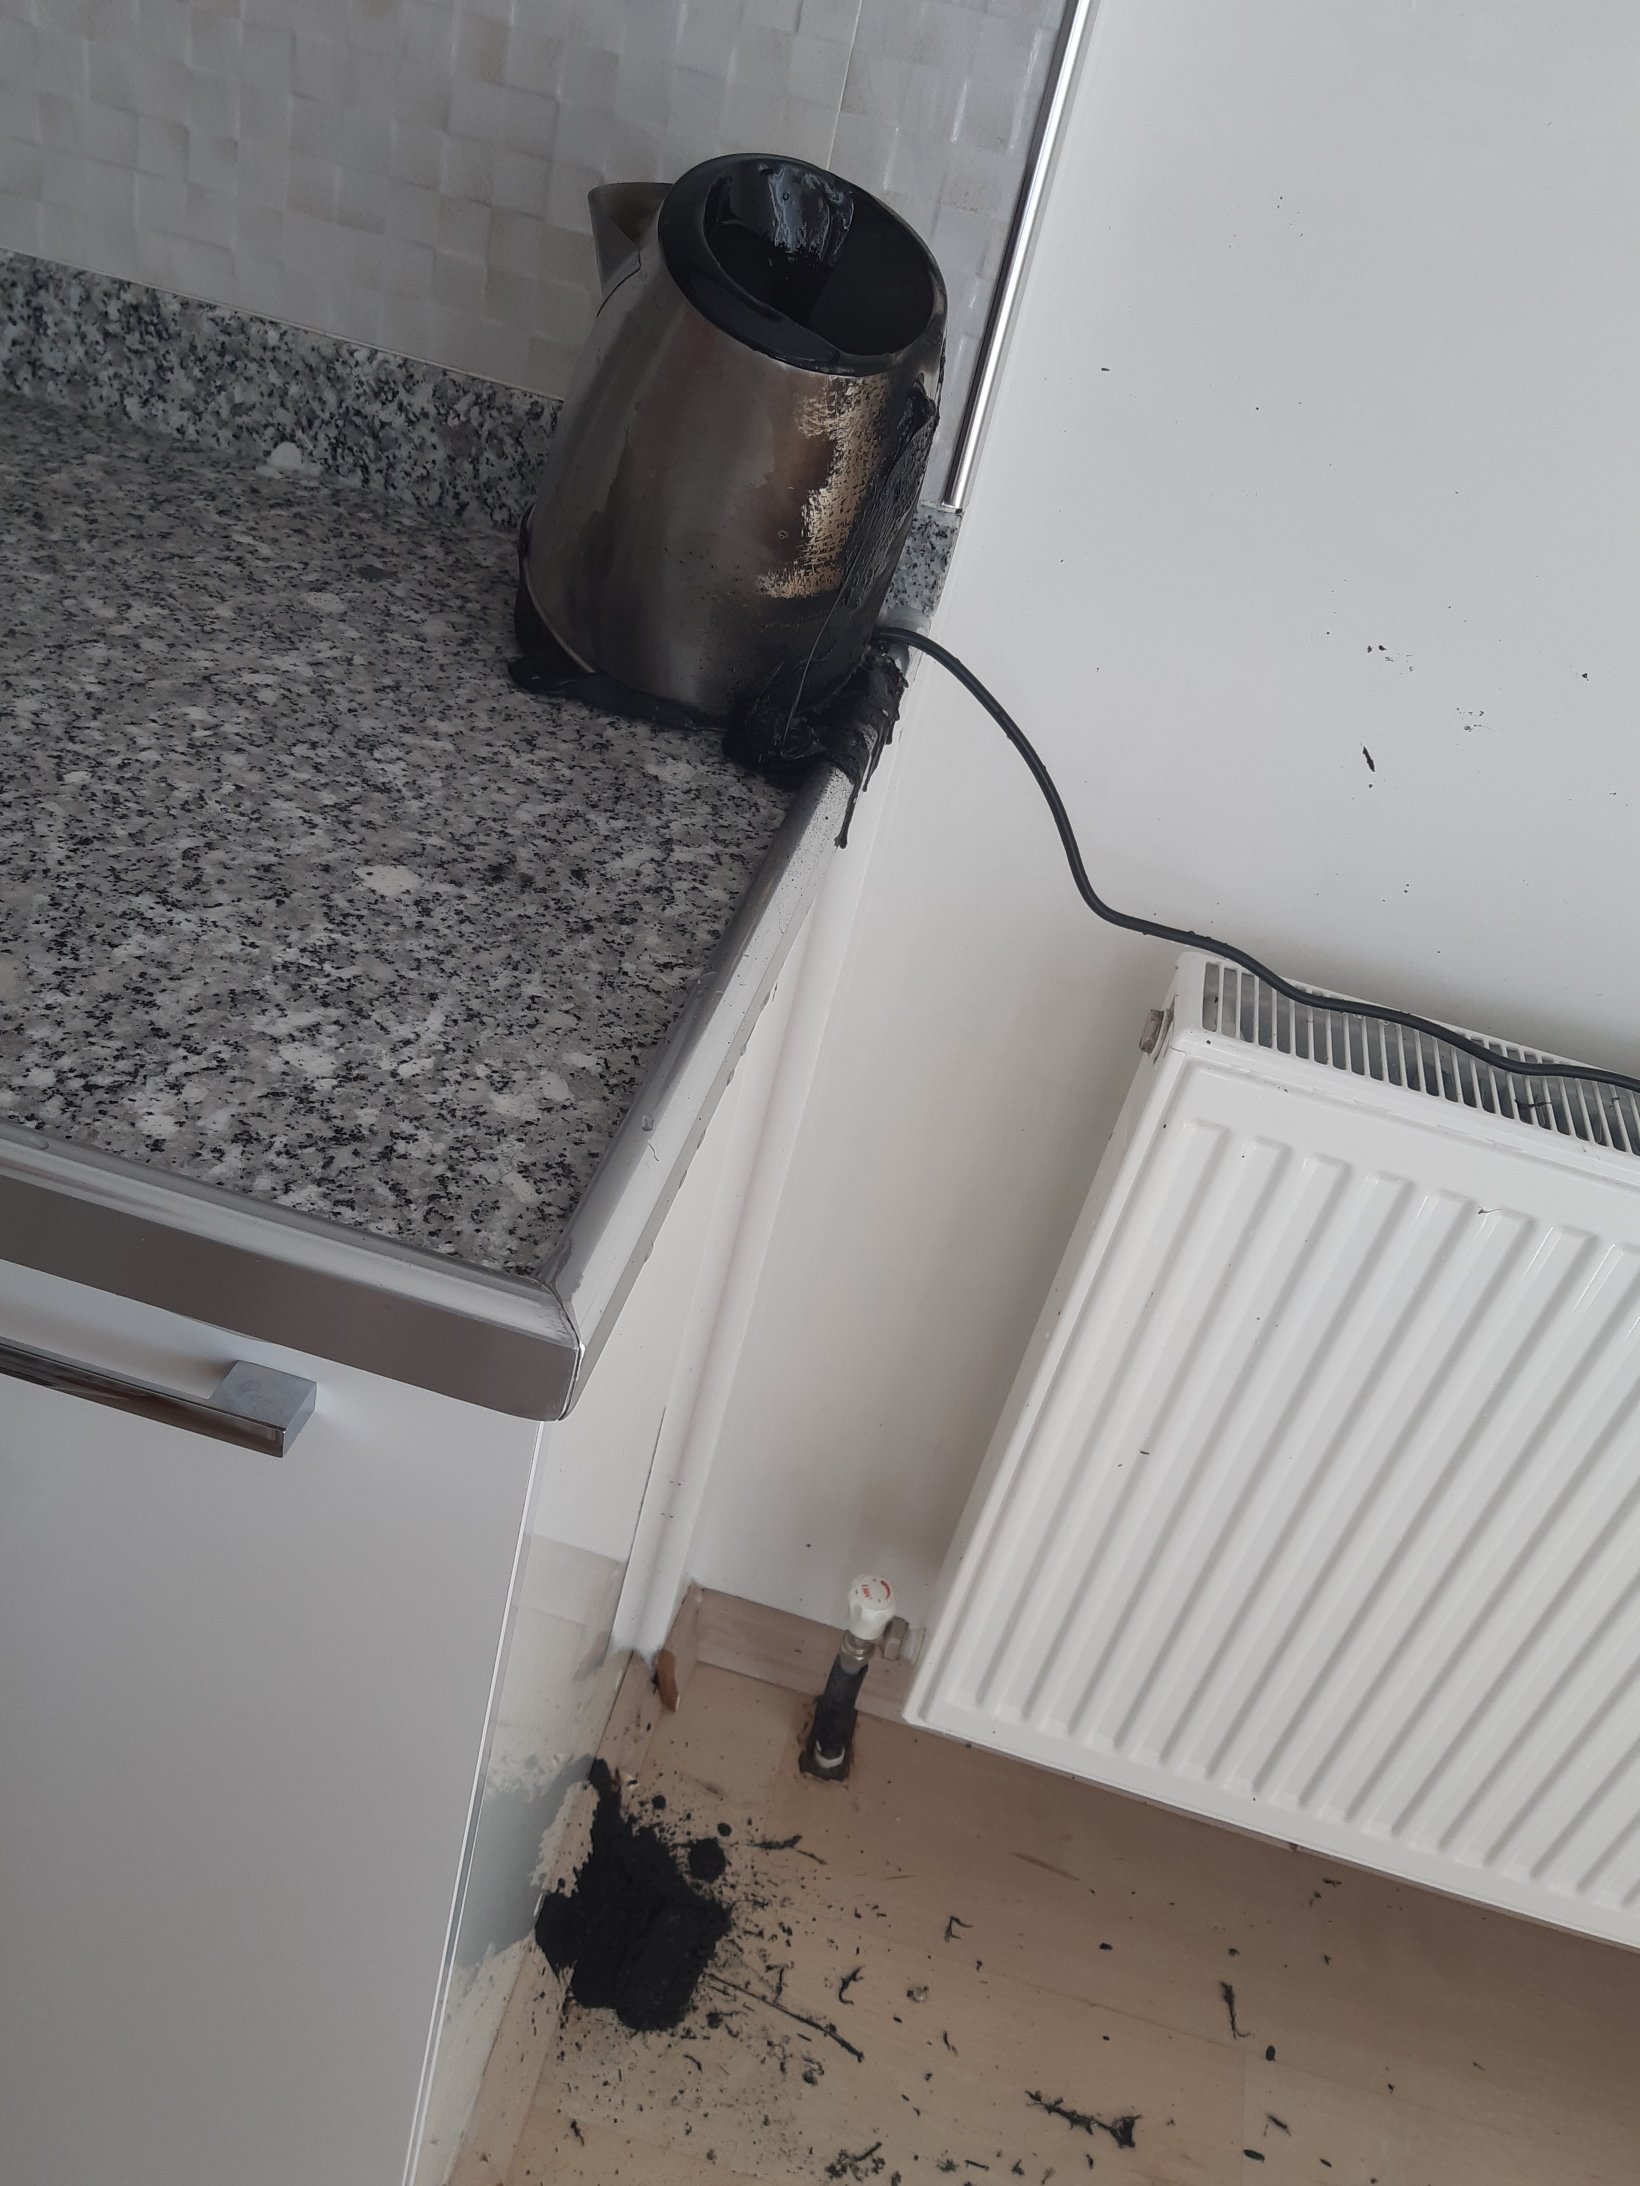 Sinbo kettle patladı Fotoğraf ile Şikayet | Fotoğraf ile İfşa Et - 1 